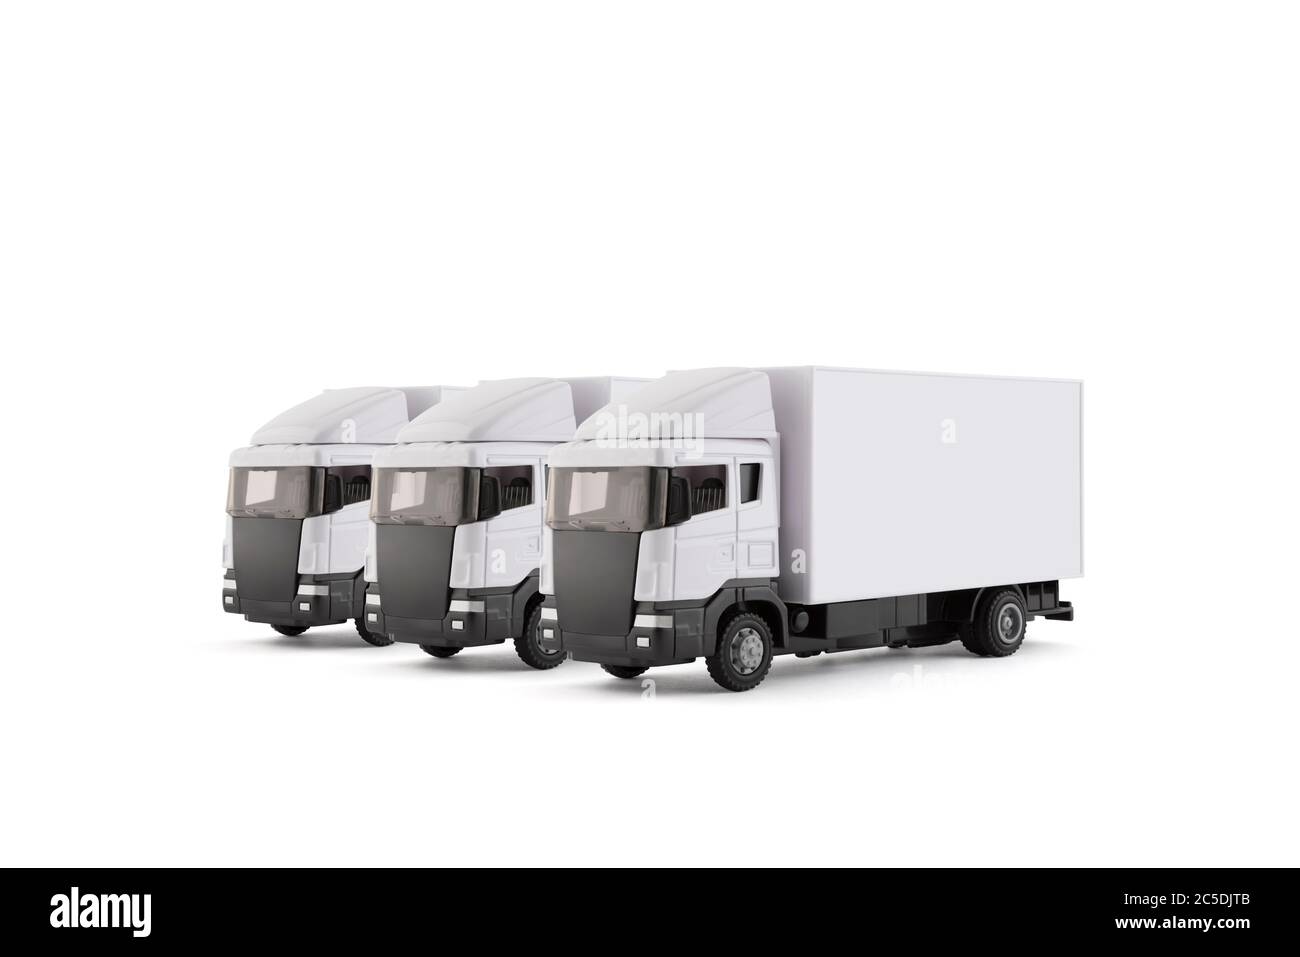 Gruppo di tre carrelli bianchi per la consegna del carico isolati su sfondo bianco Foto Stock